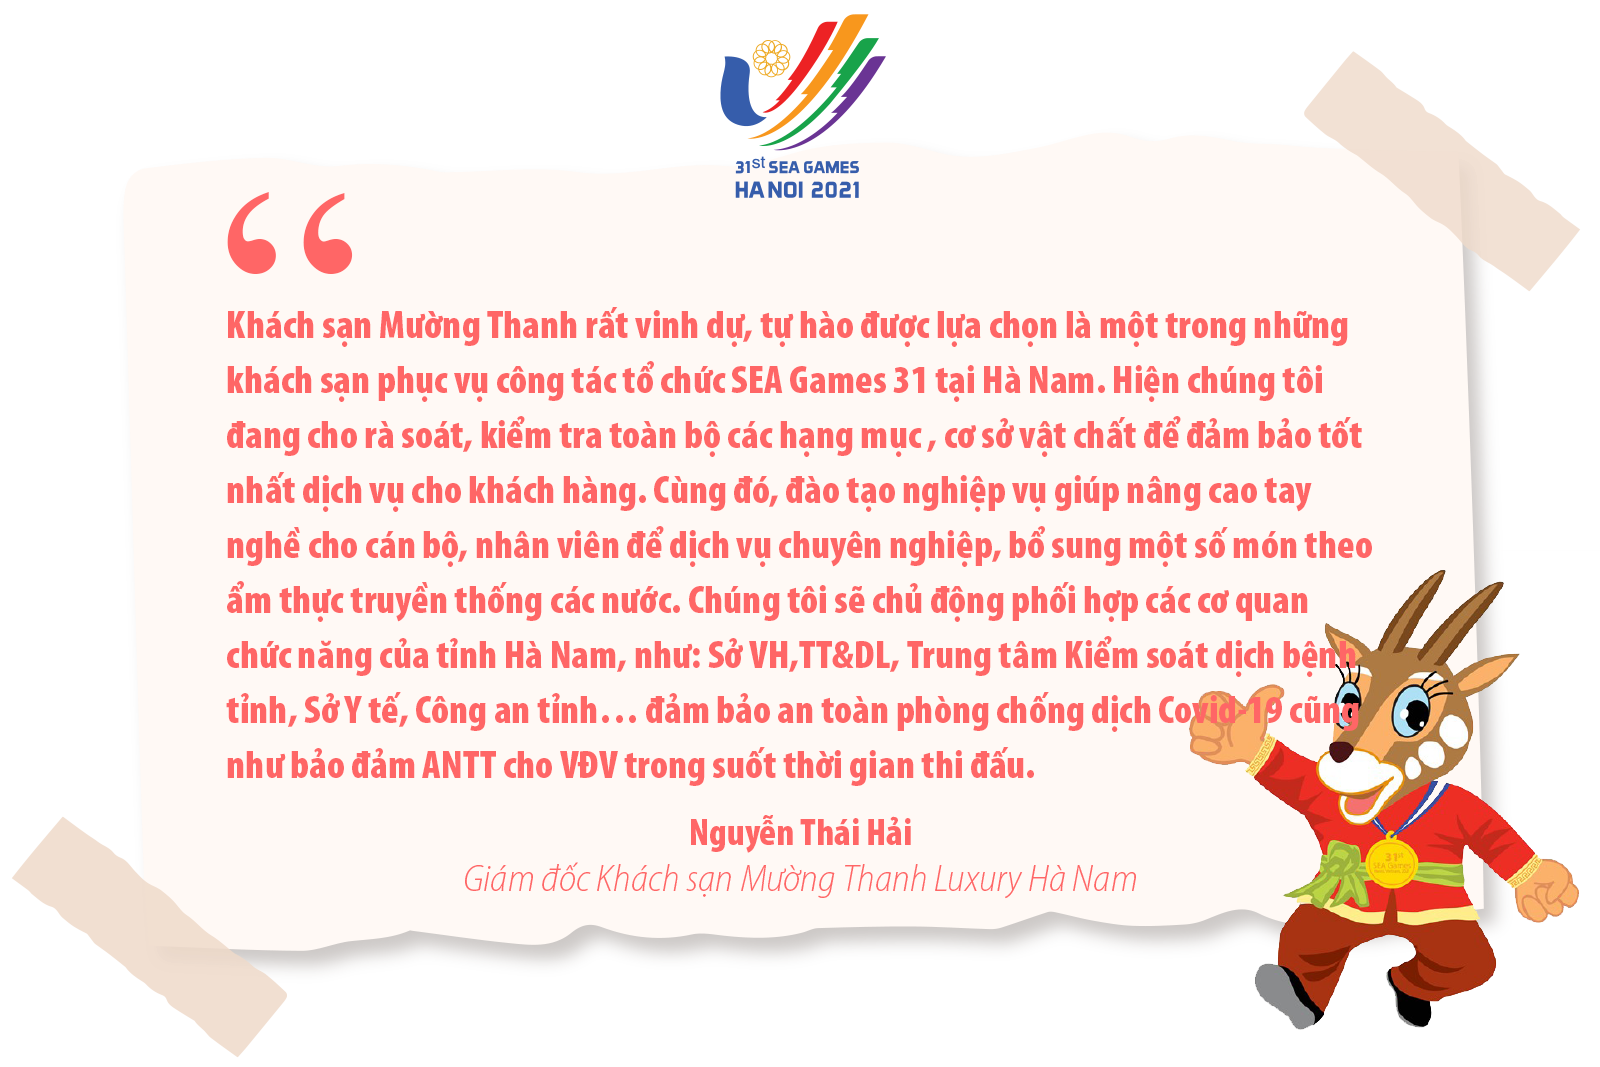 SEA Games 31 là cơ hội để Hà Nam khẳng định năng lực tổ chức các giải thể thao lớn